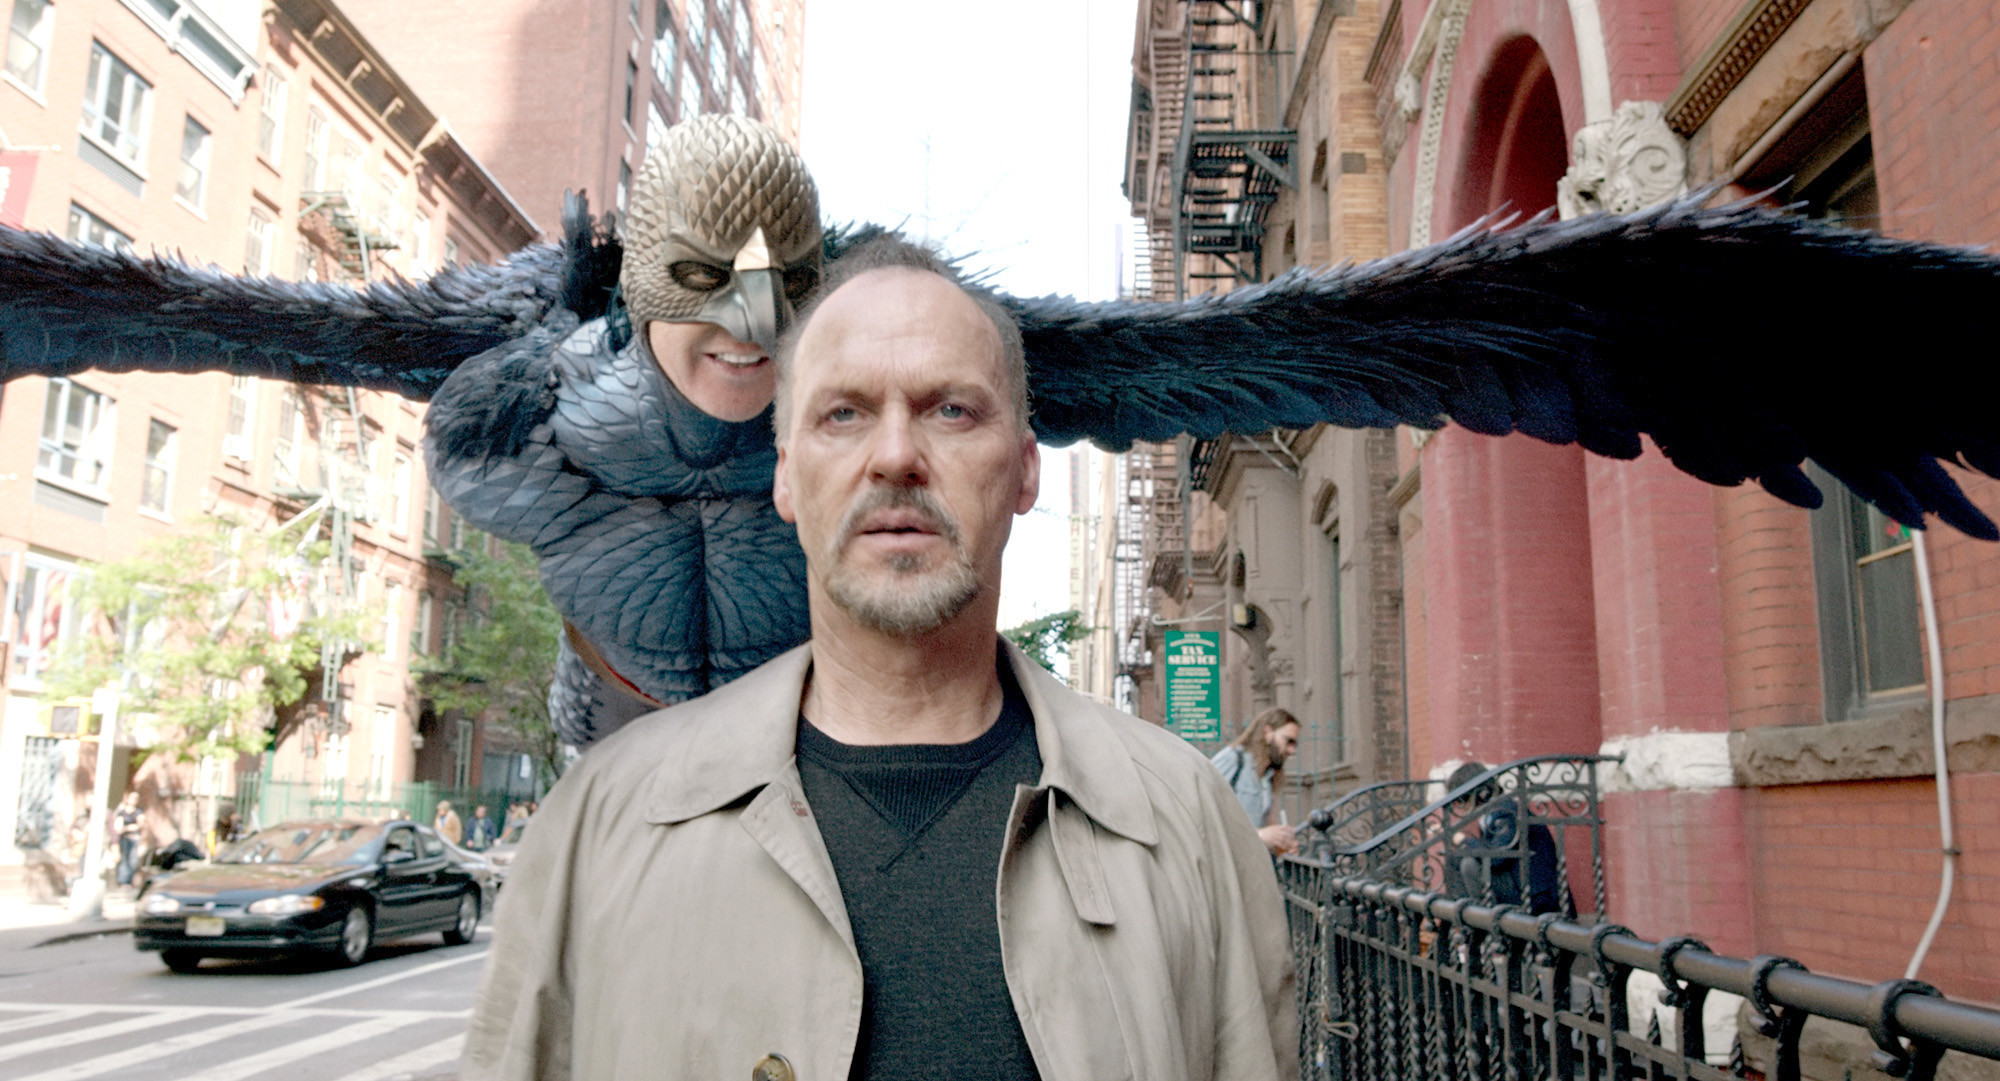 Le film Birdman sera disponible à partir de fin mars 2021 sur Amazon Prime Video - Cultea